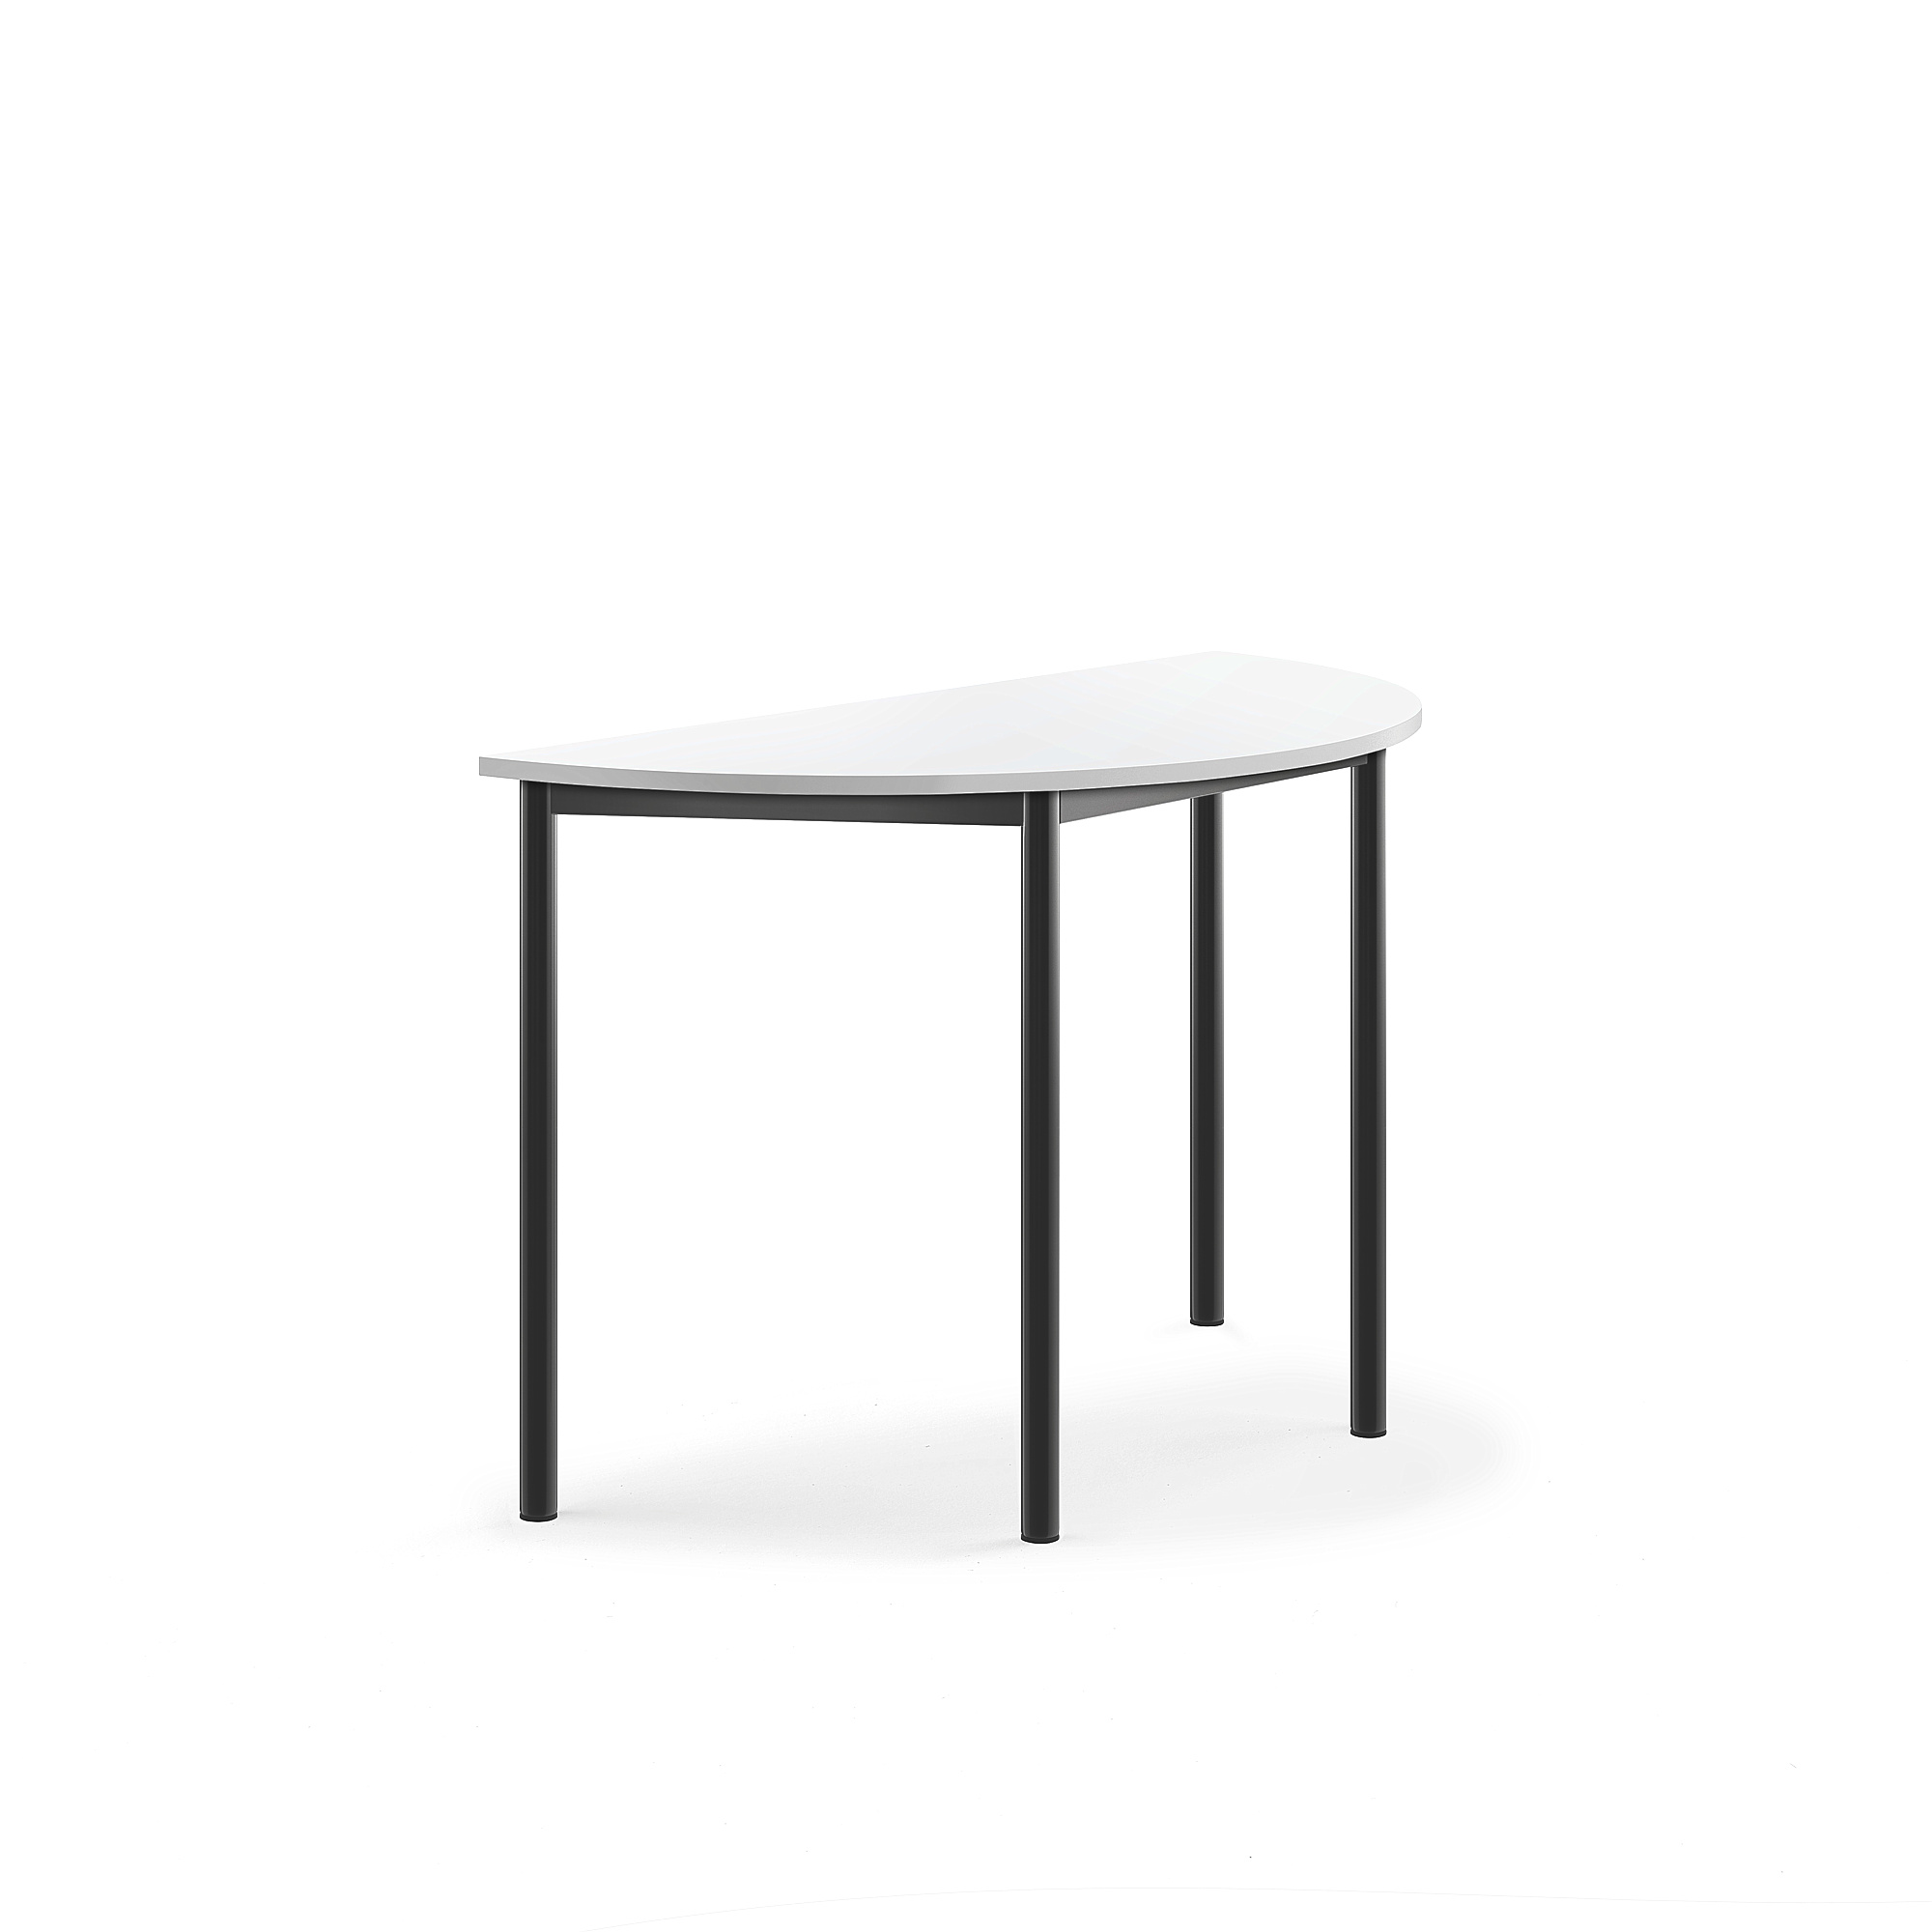 Stůl SONITUS, půlkruh, 1200x600x760 mm, antracitově šedé nohy, HPL deska tlumící hluk, bílá